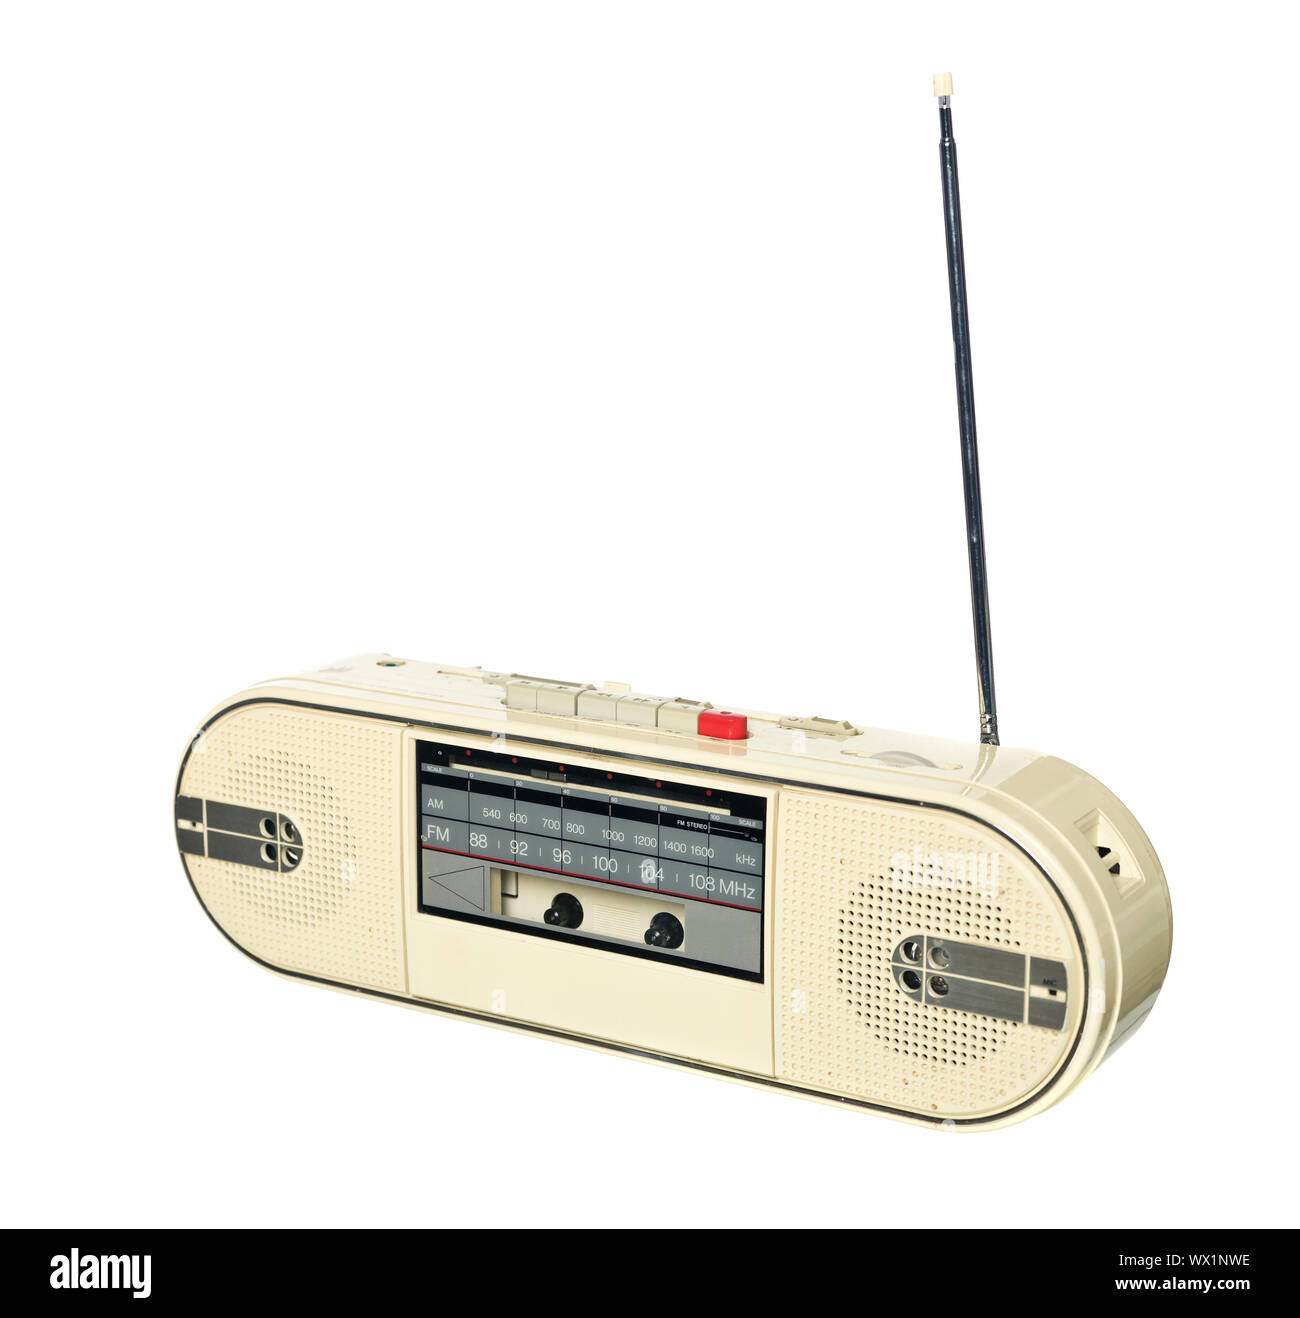 1980s style radio isolated on white background Stock Photo